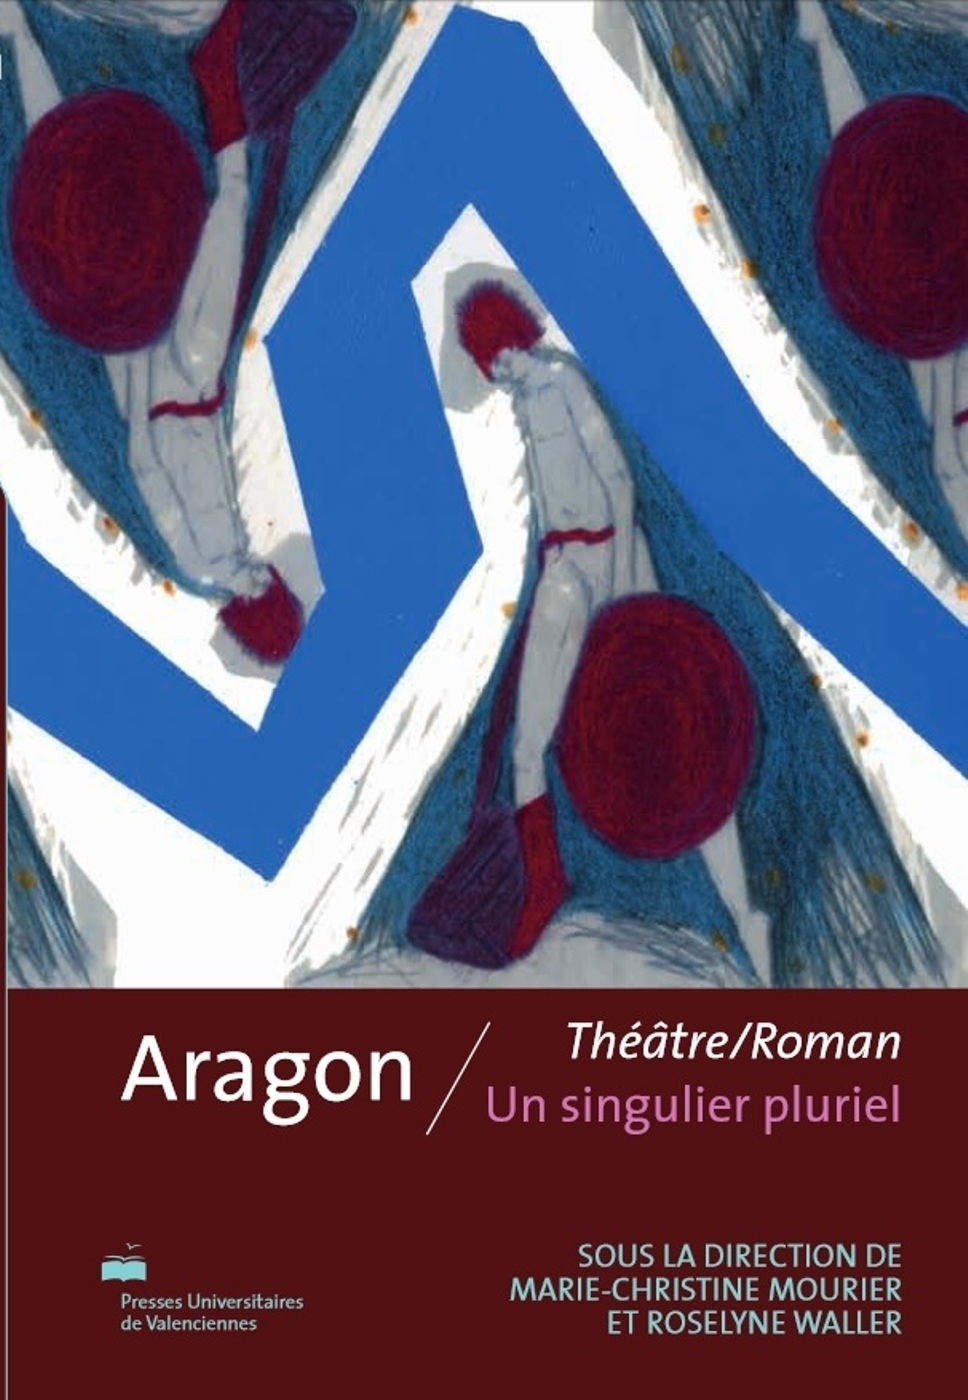 M.-Chr. Mourier & R. Waller (dir.), Aragon, théâtre/roman, un singulier pluriel